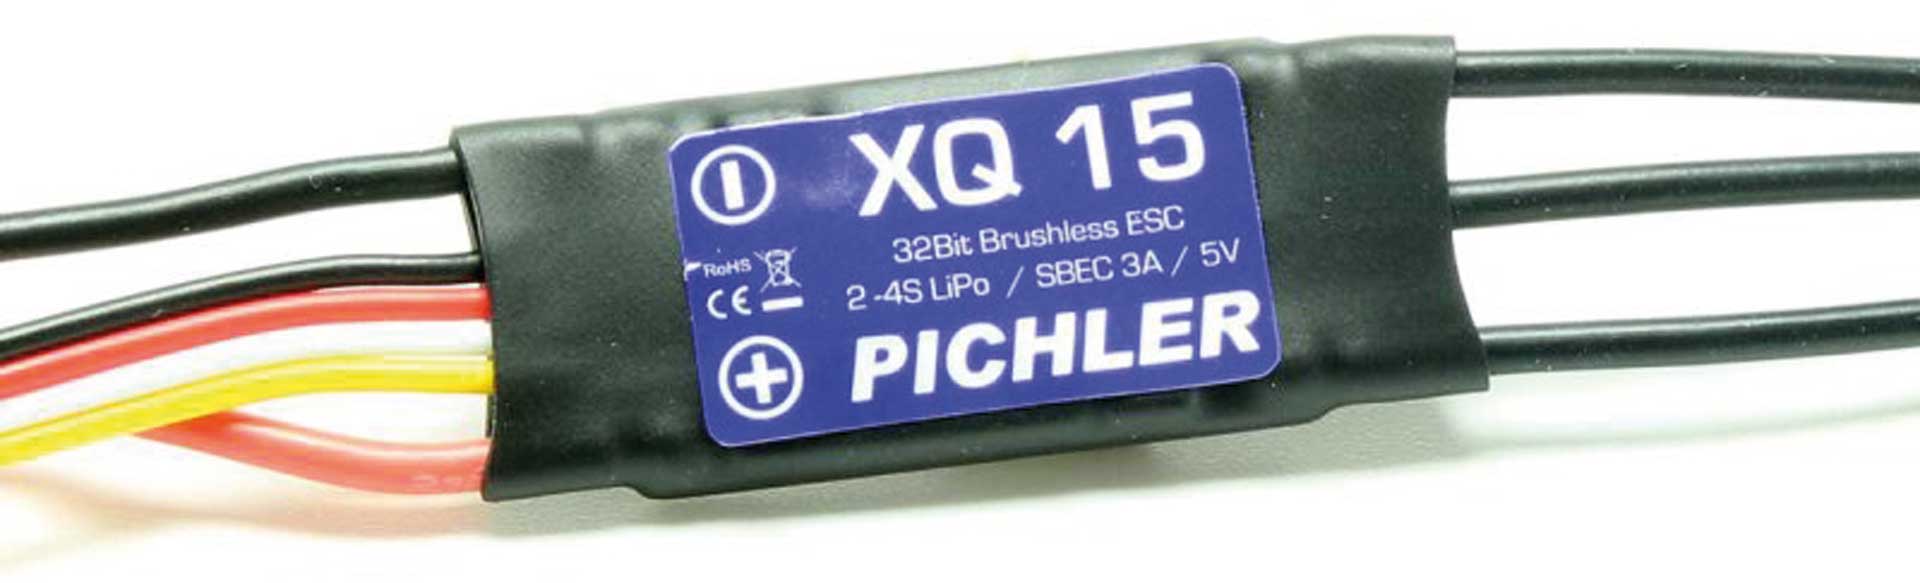 Pichler Régulateur Brushless XQ+ 15